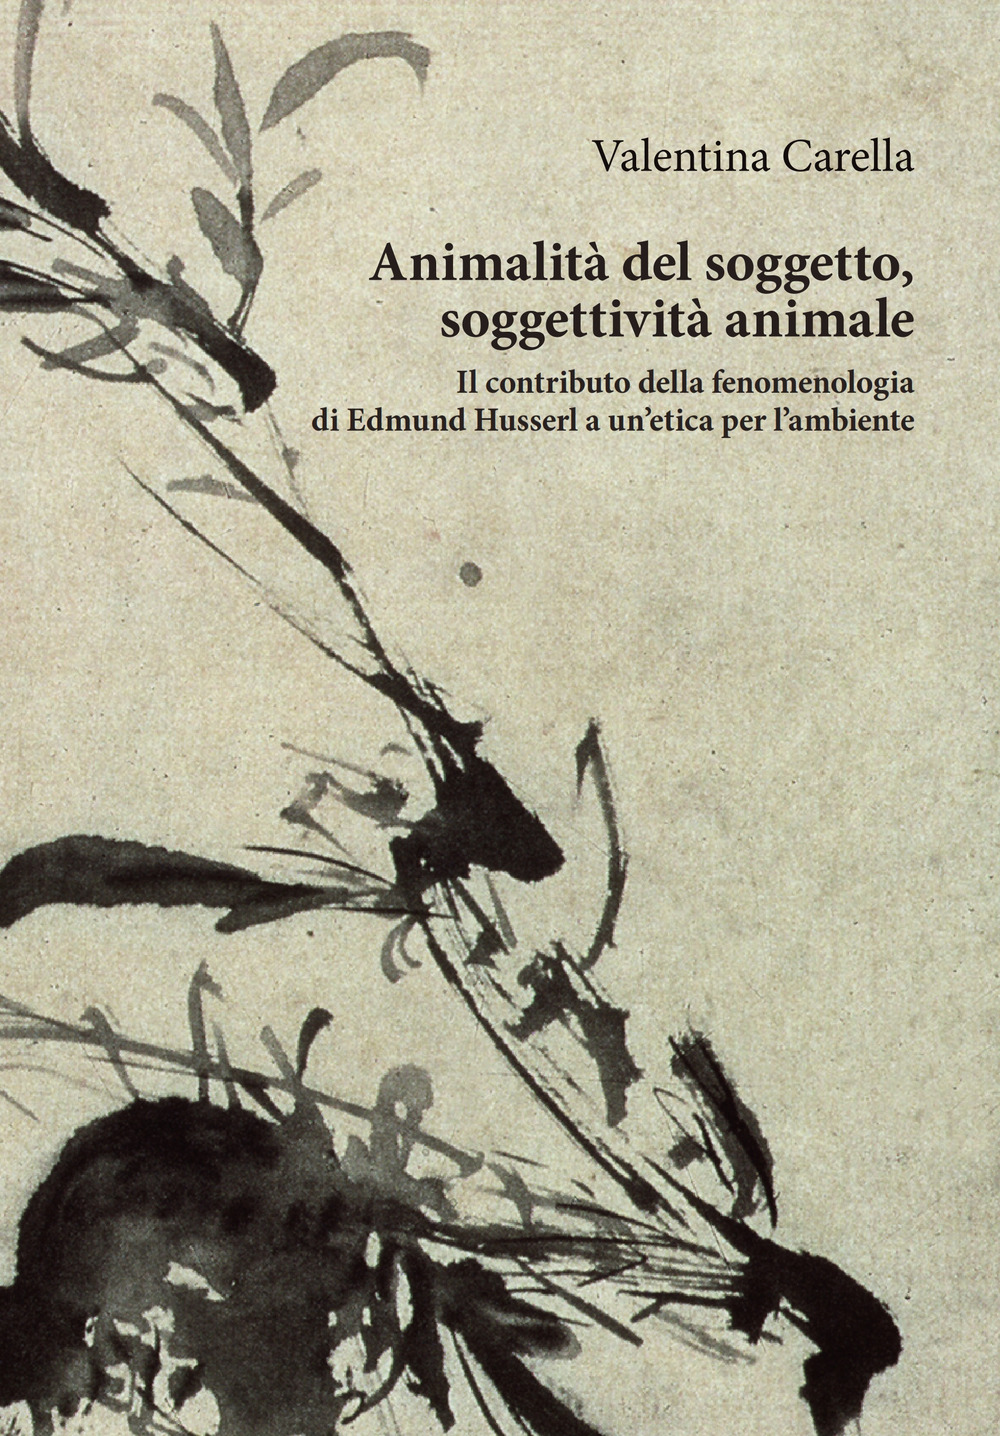 Animalità del soggetto, soggettività animale. Il contributo della fenomenologia di Edmund Husserl a un'etica per l'ambiente